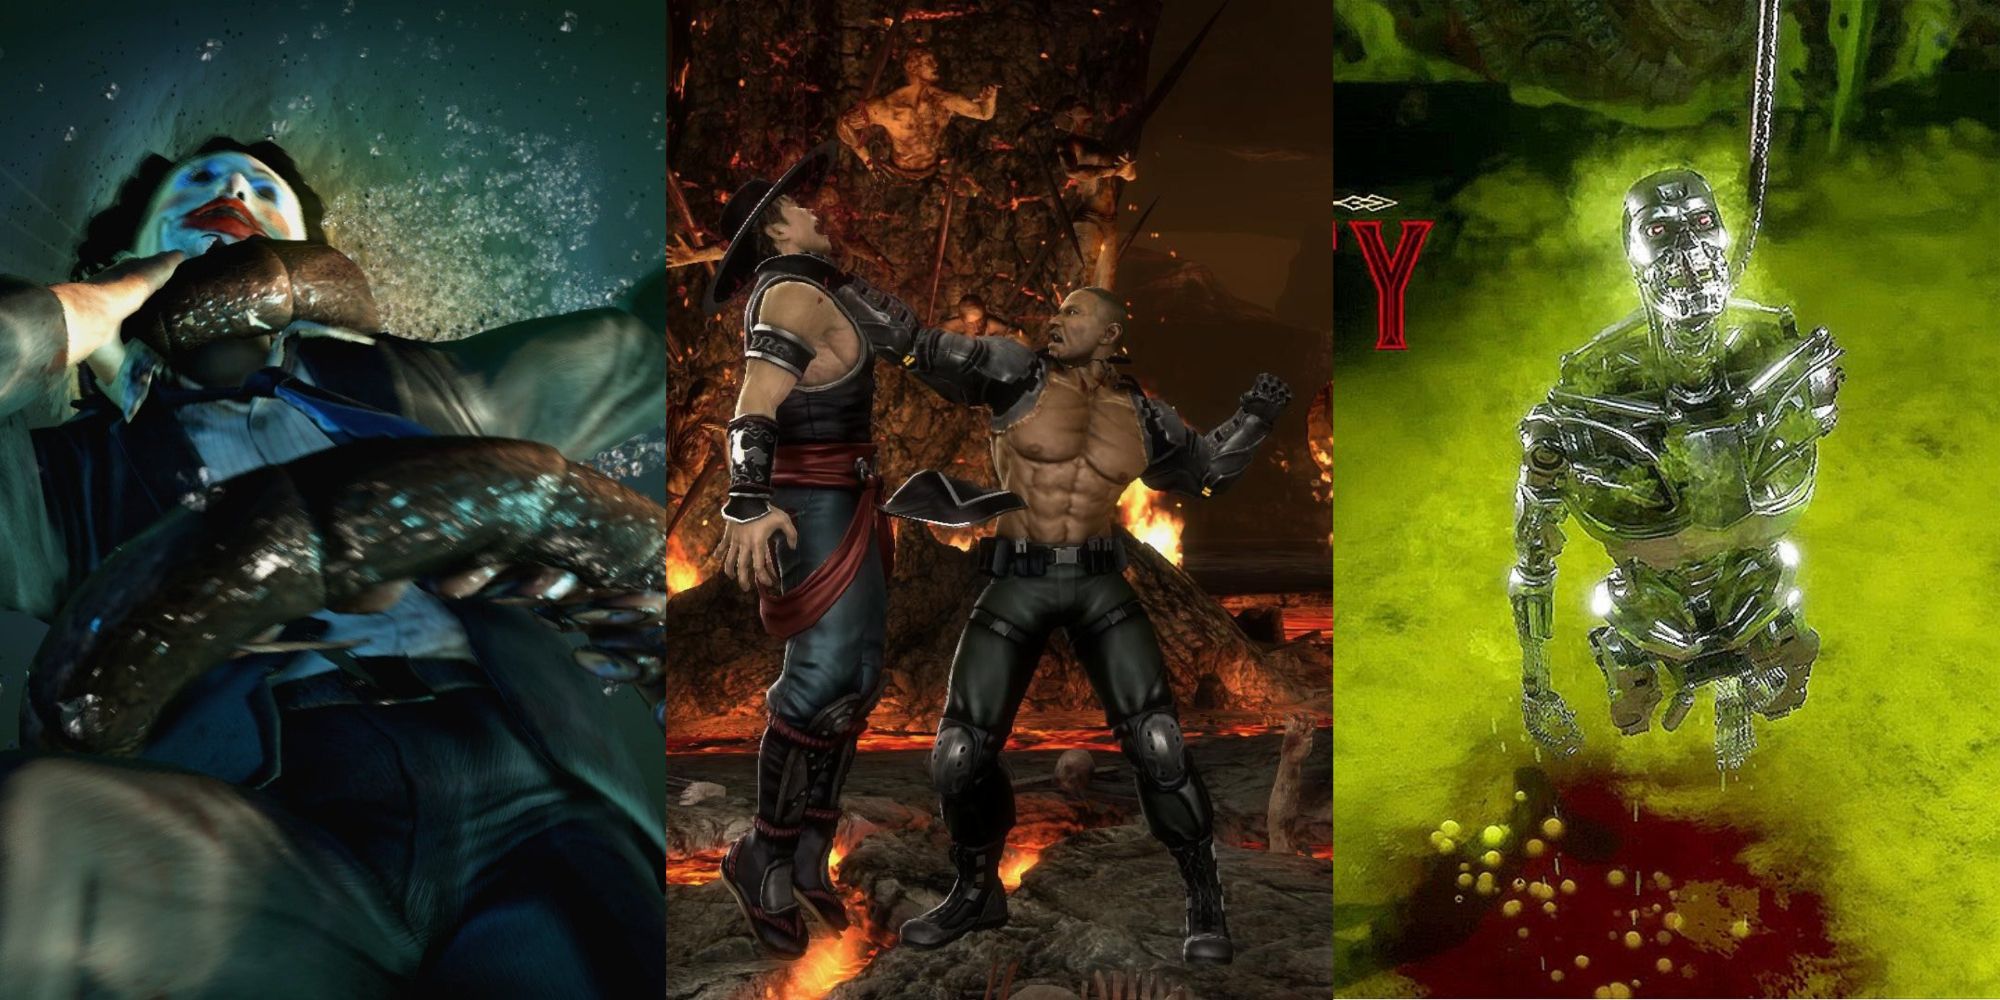 The Top 10 Best Fatalities in Mortal Kombat X - Video Games